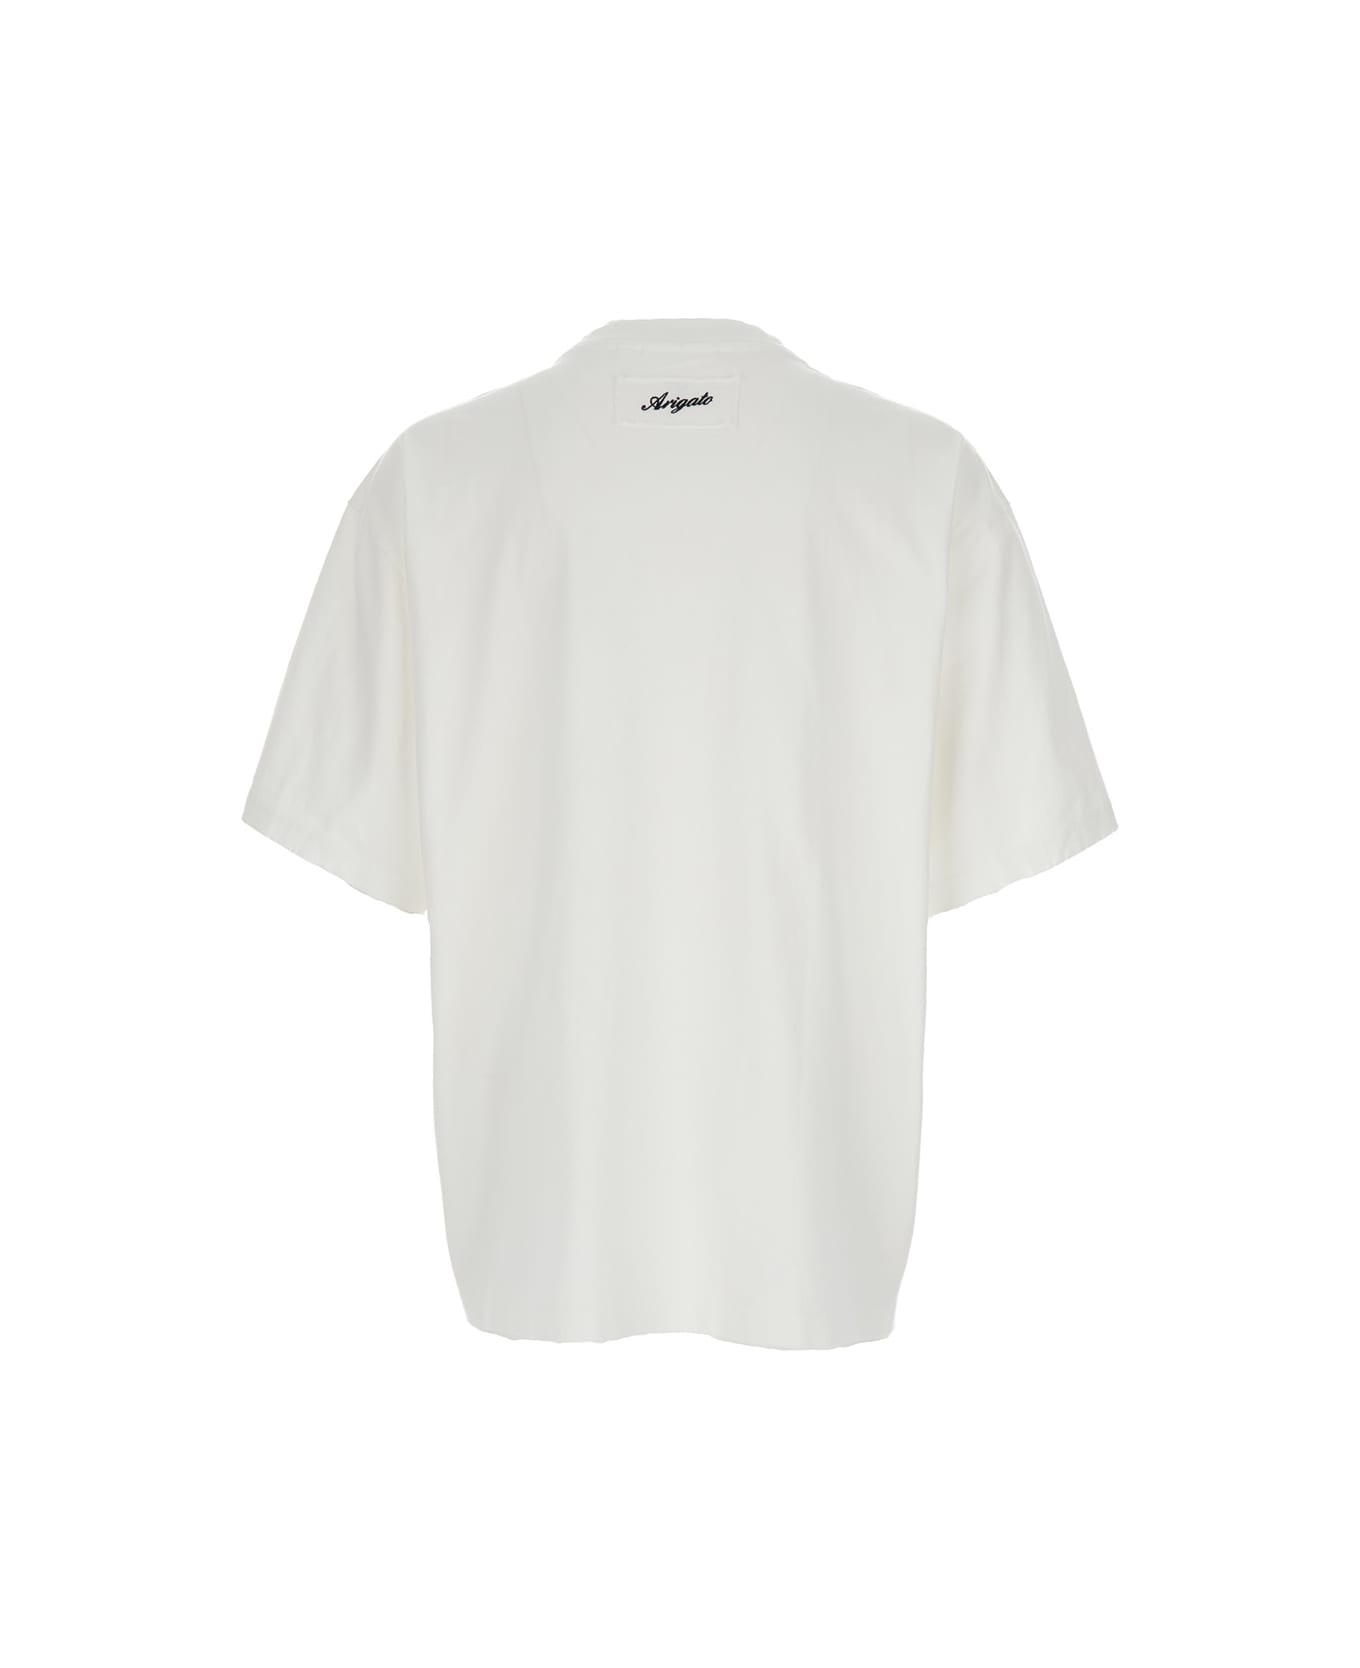 Axel Arigato White Crew Neck T-shirt In Cotton Man - White シャツ